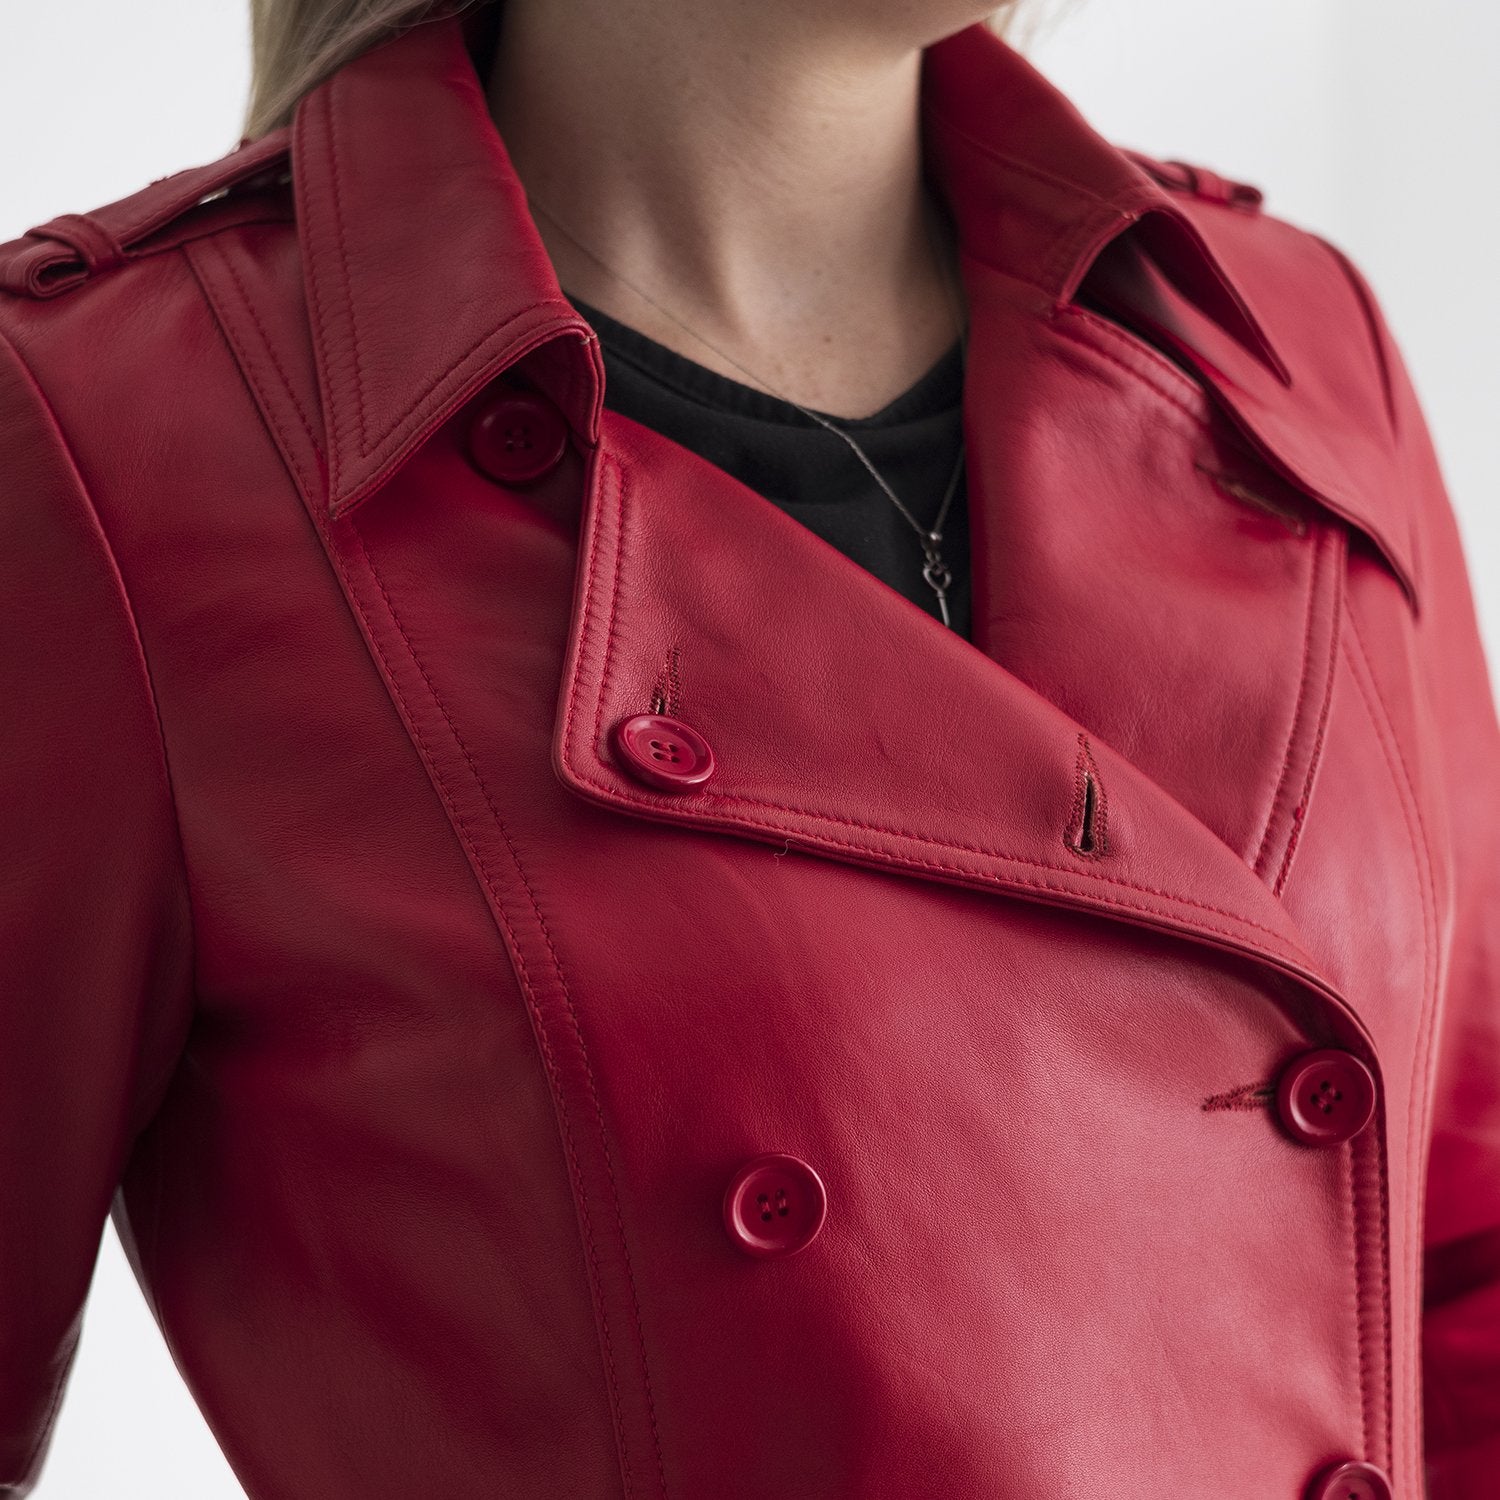 Olivia - Women's Leather Jacket Red Jacket Best Leather Ny   